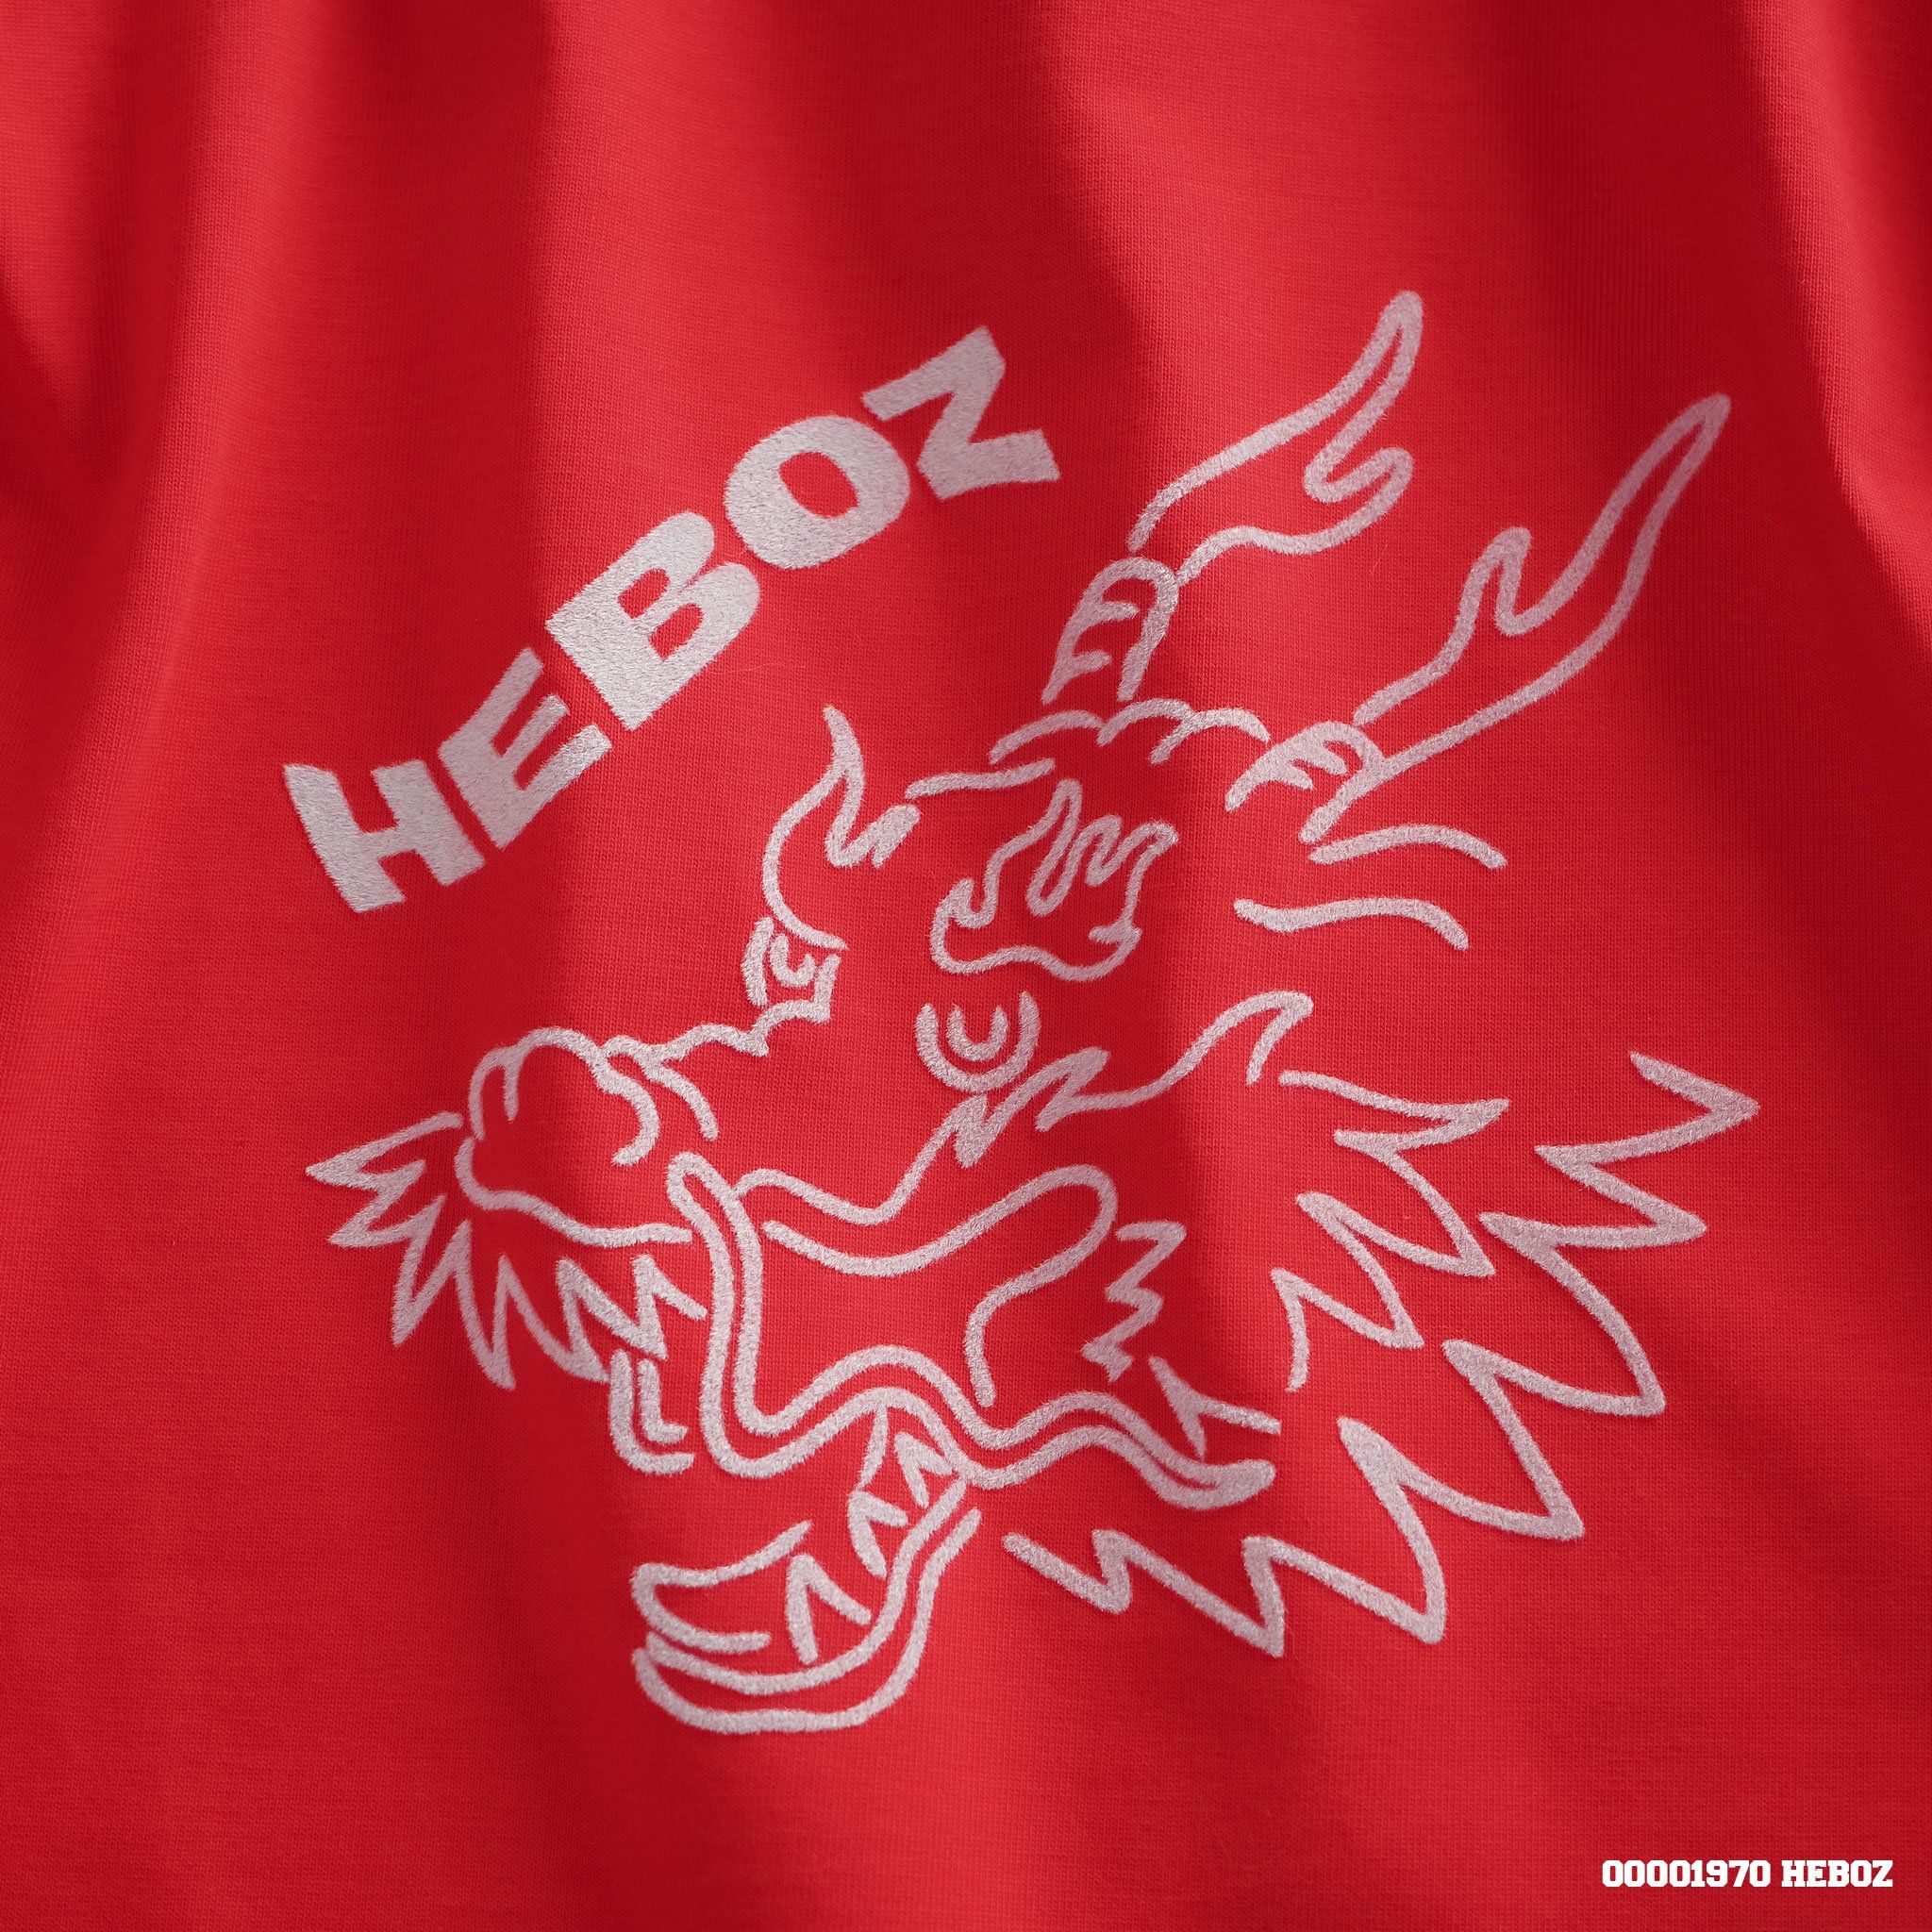  Áo thun in nhung dragon Heboz 2M - 00001970 